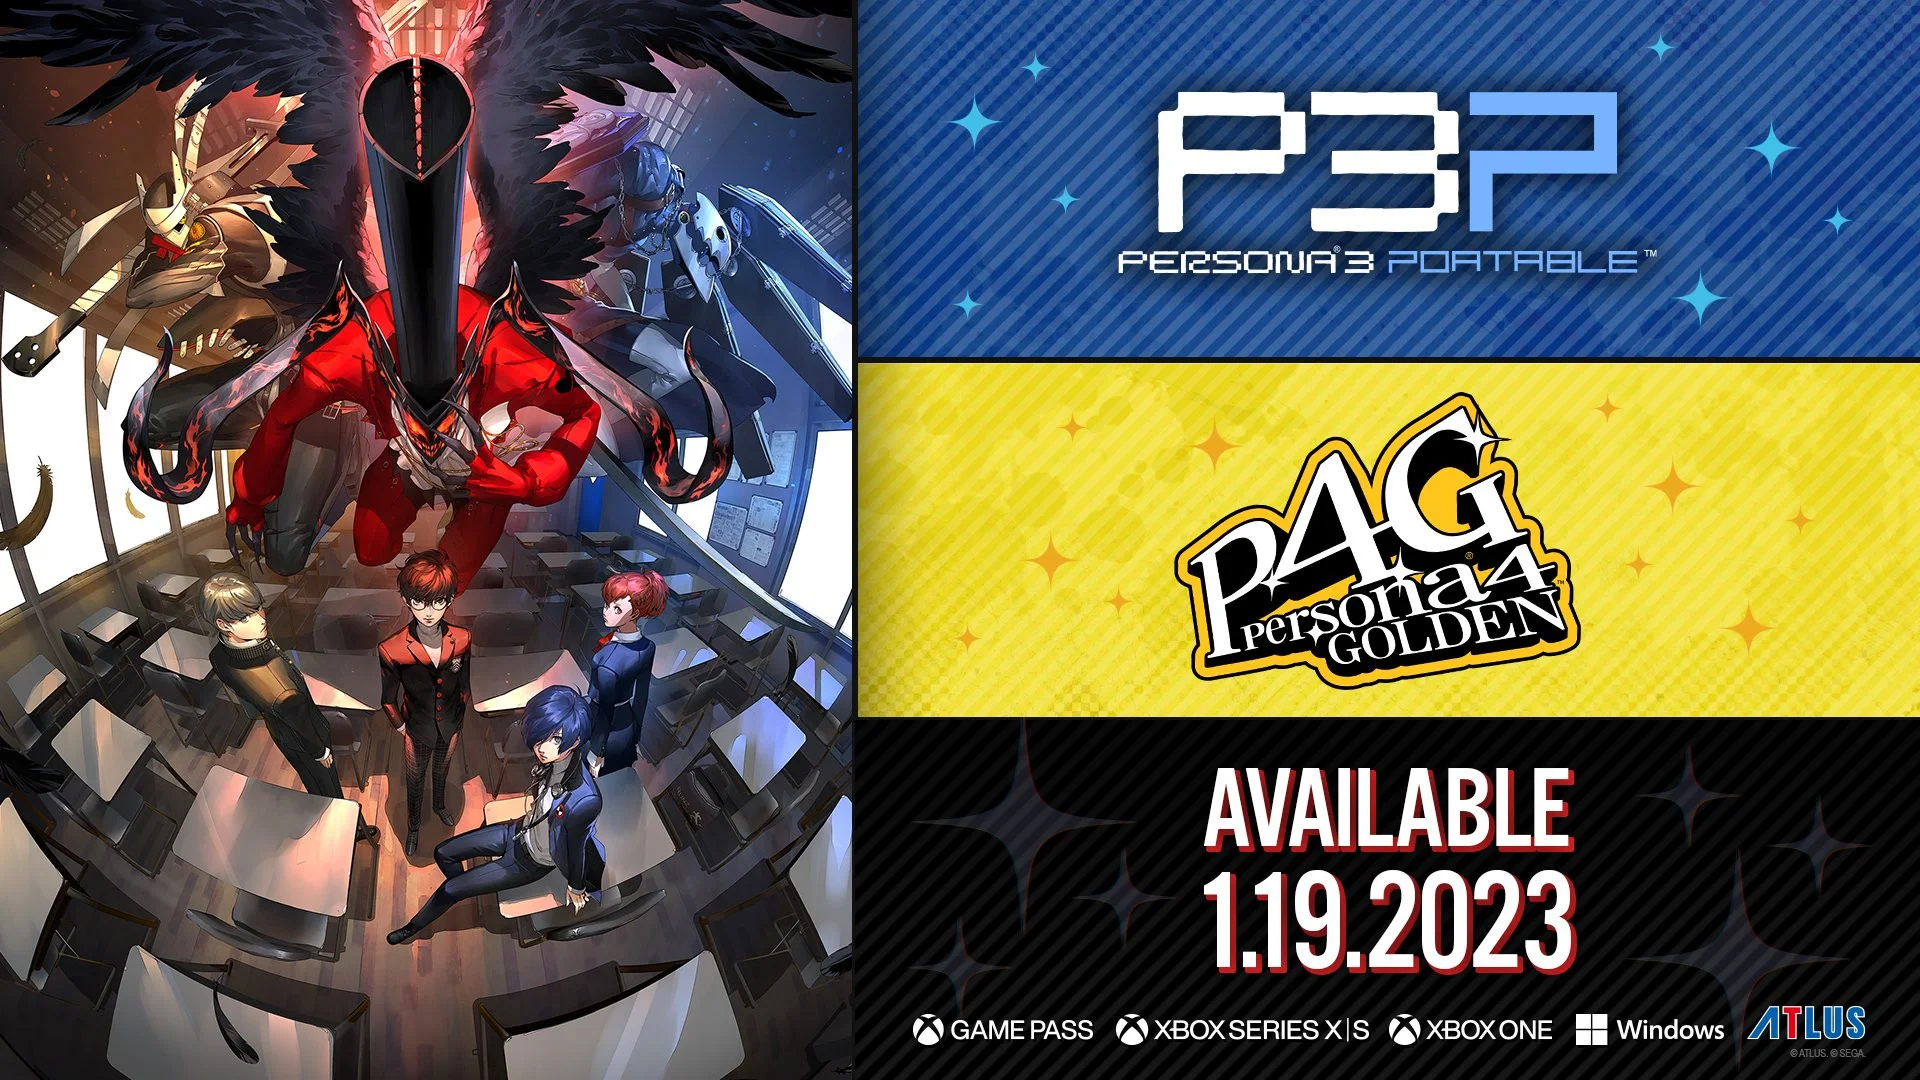 Ремастеры Persona 3 Portable и Persona 4 Golden выходят 19 января - фото 1